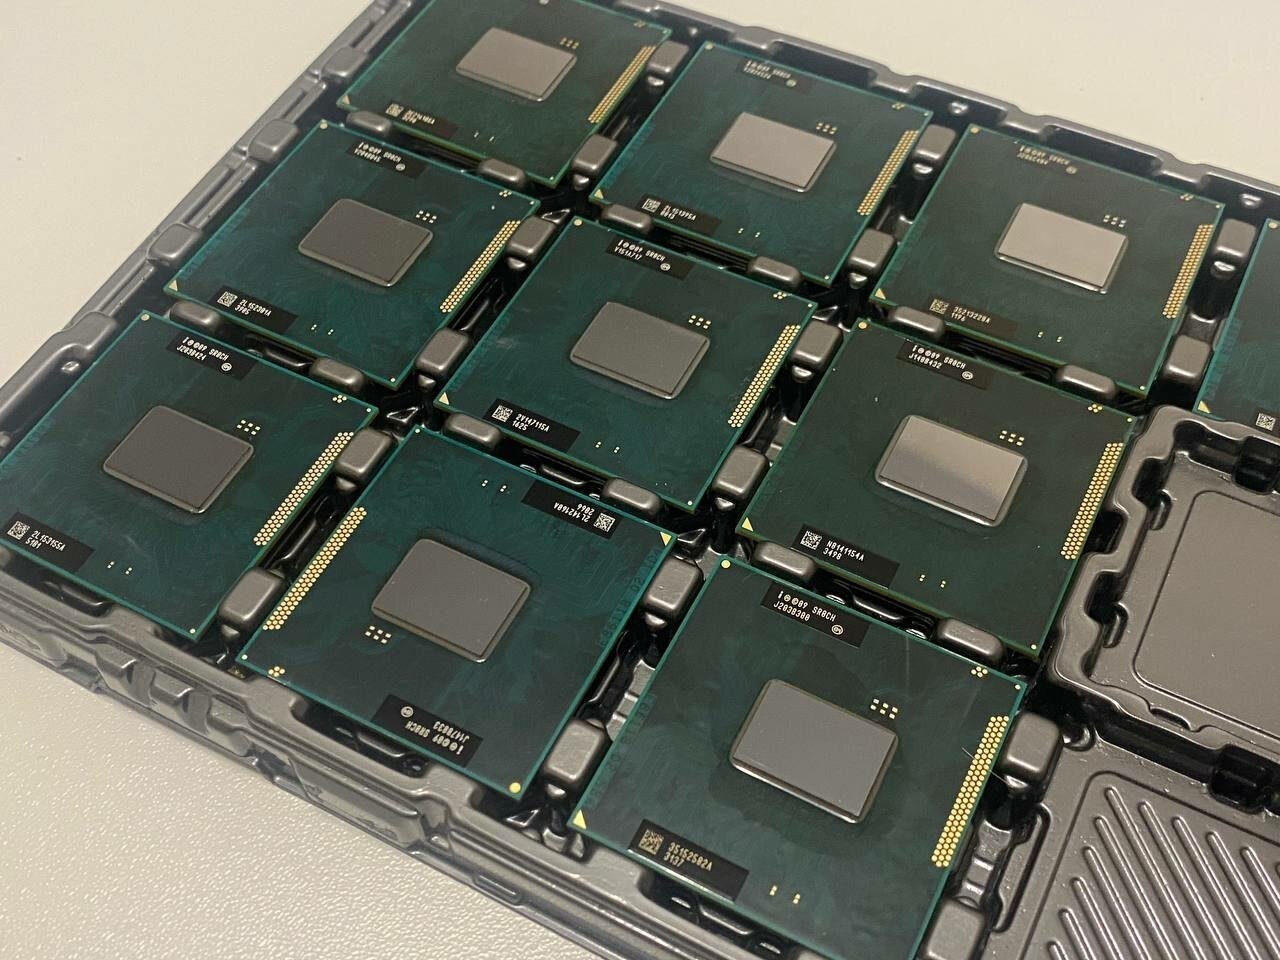 Процессор i5-2450m SR0CH